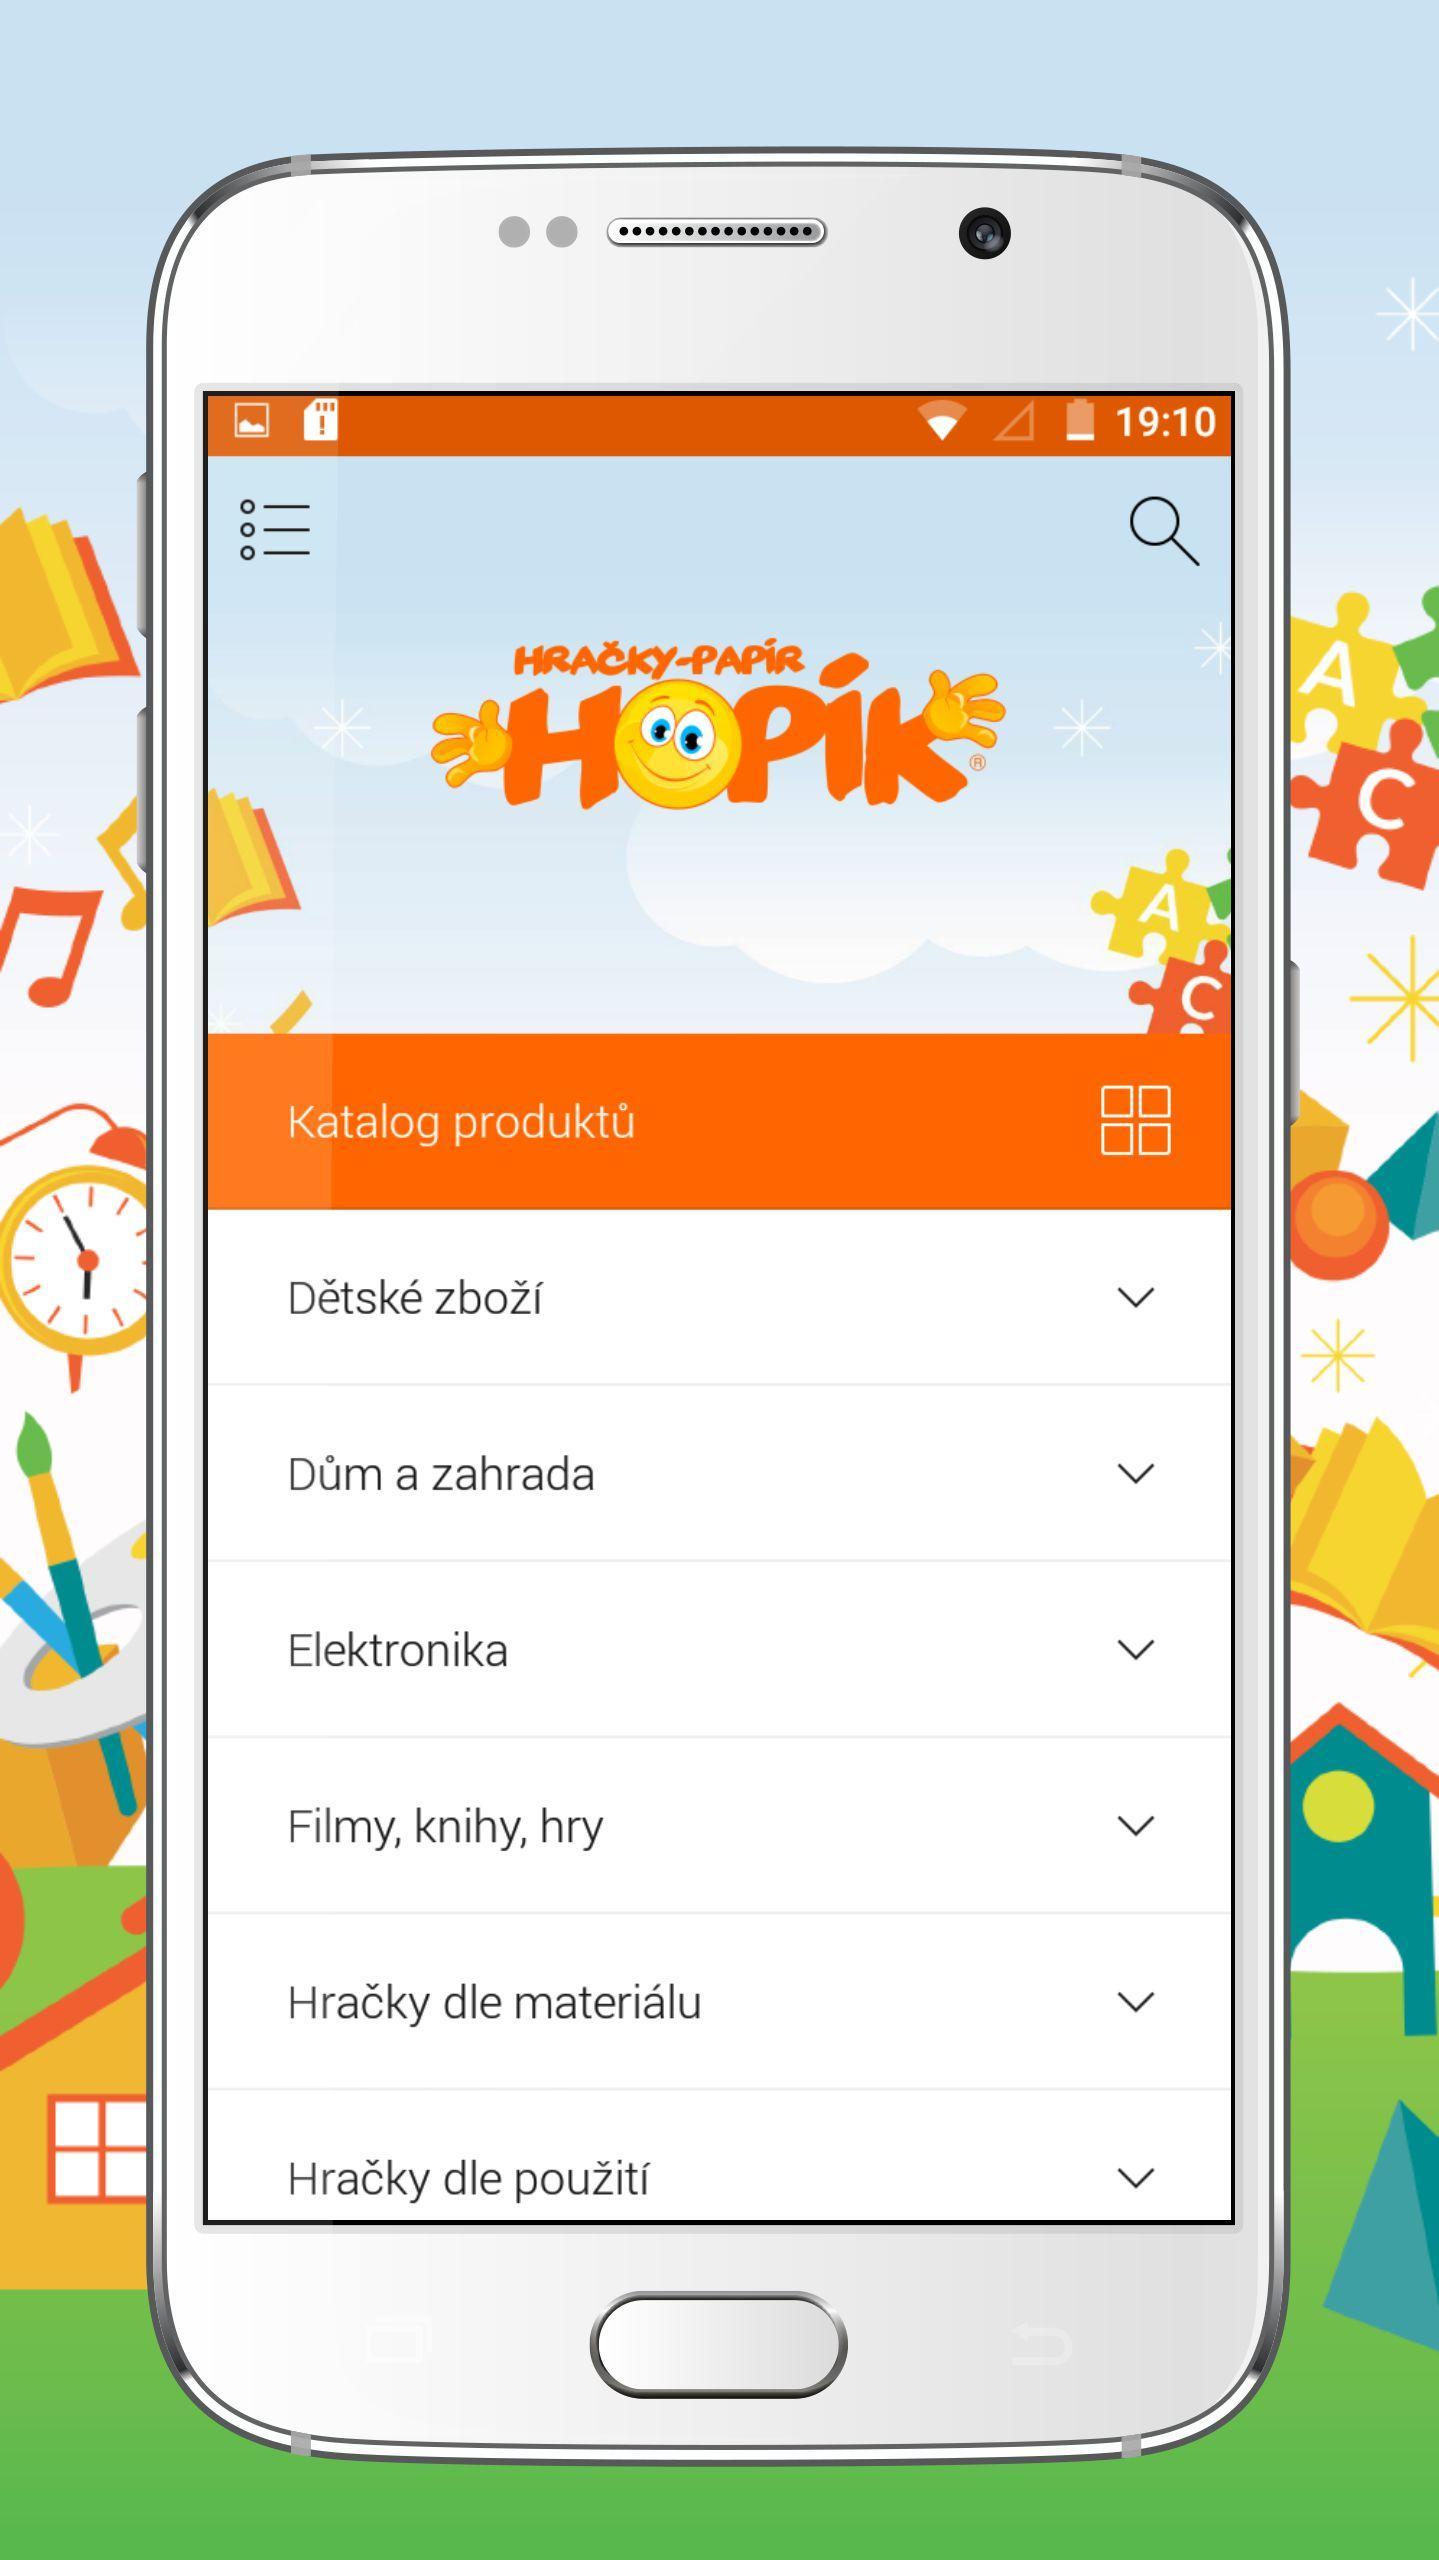 Hračky Hopík for Android - APK Download